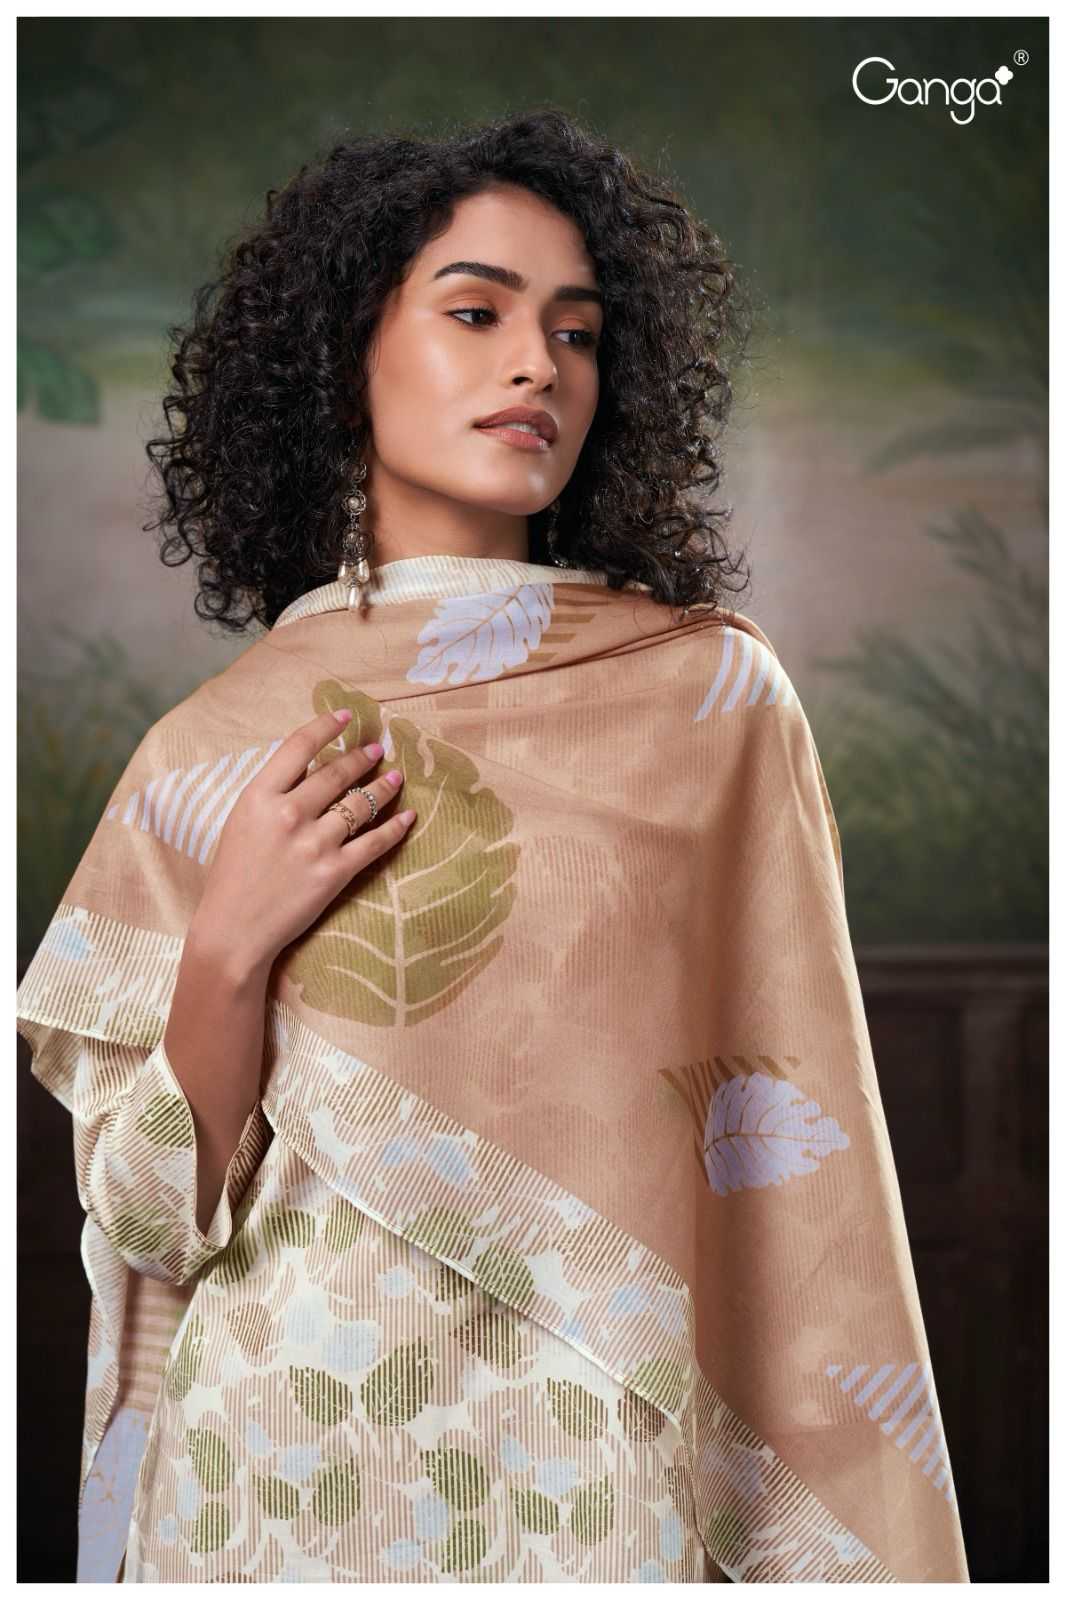 Ganga RIDAH 2677 Dress Materials Wholesale catalog